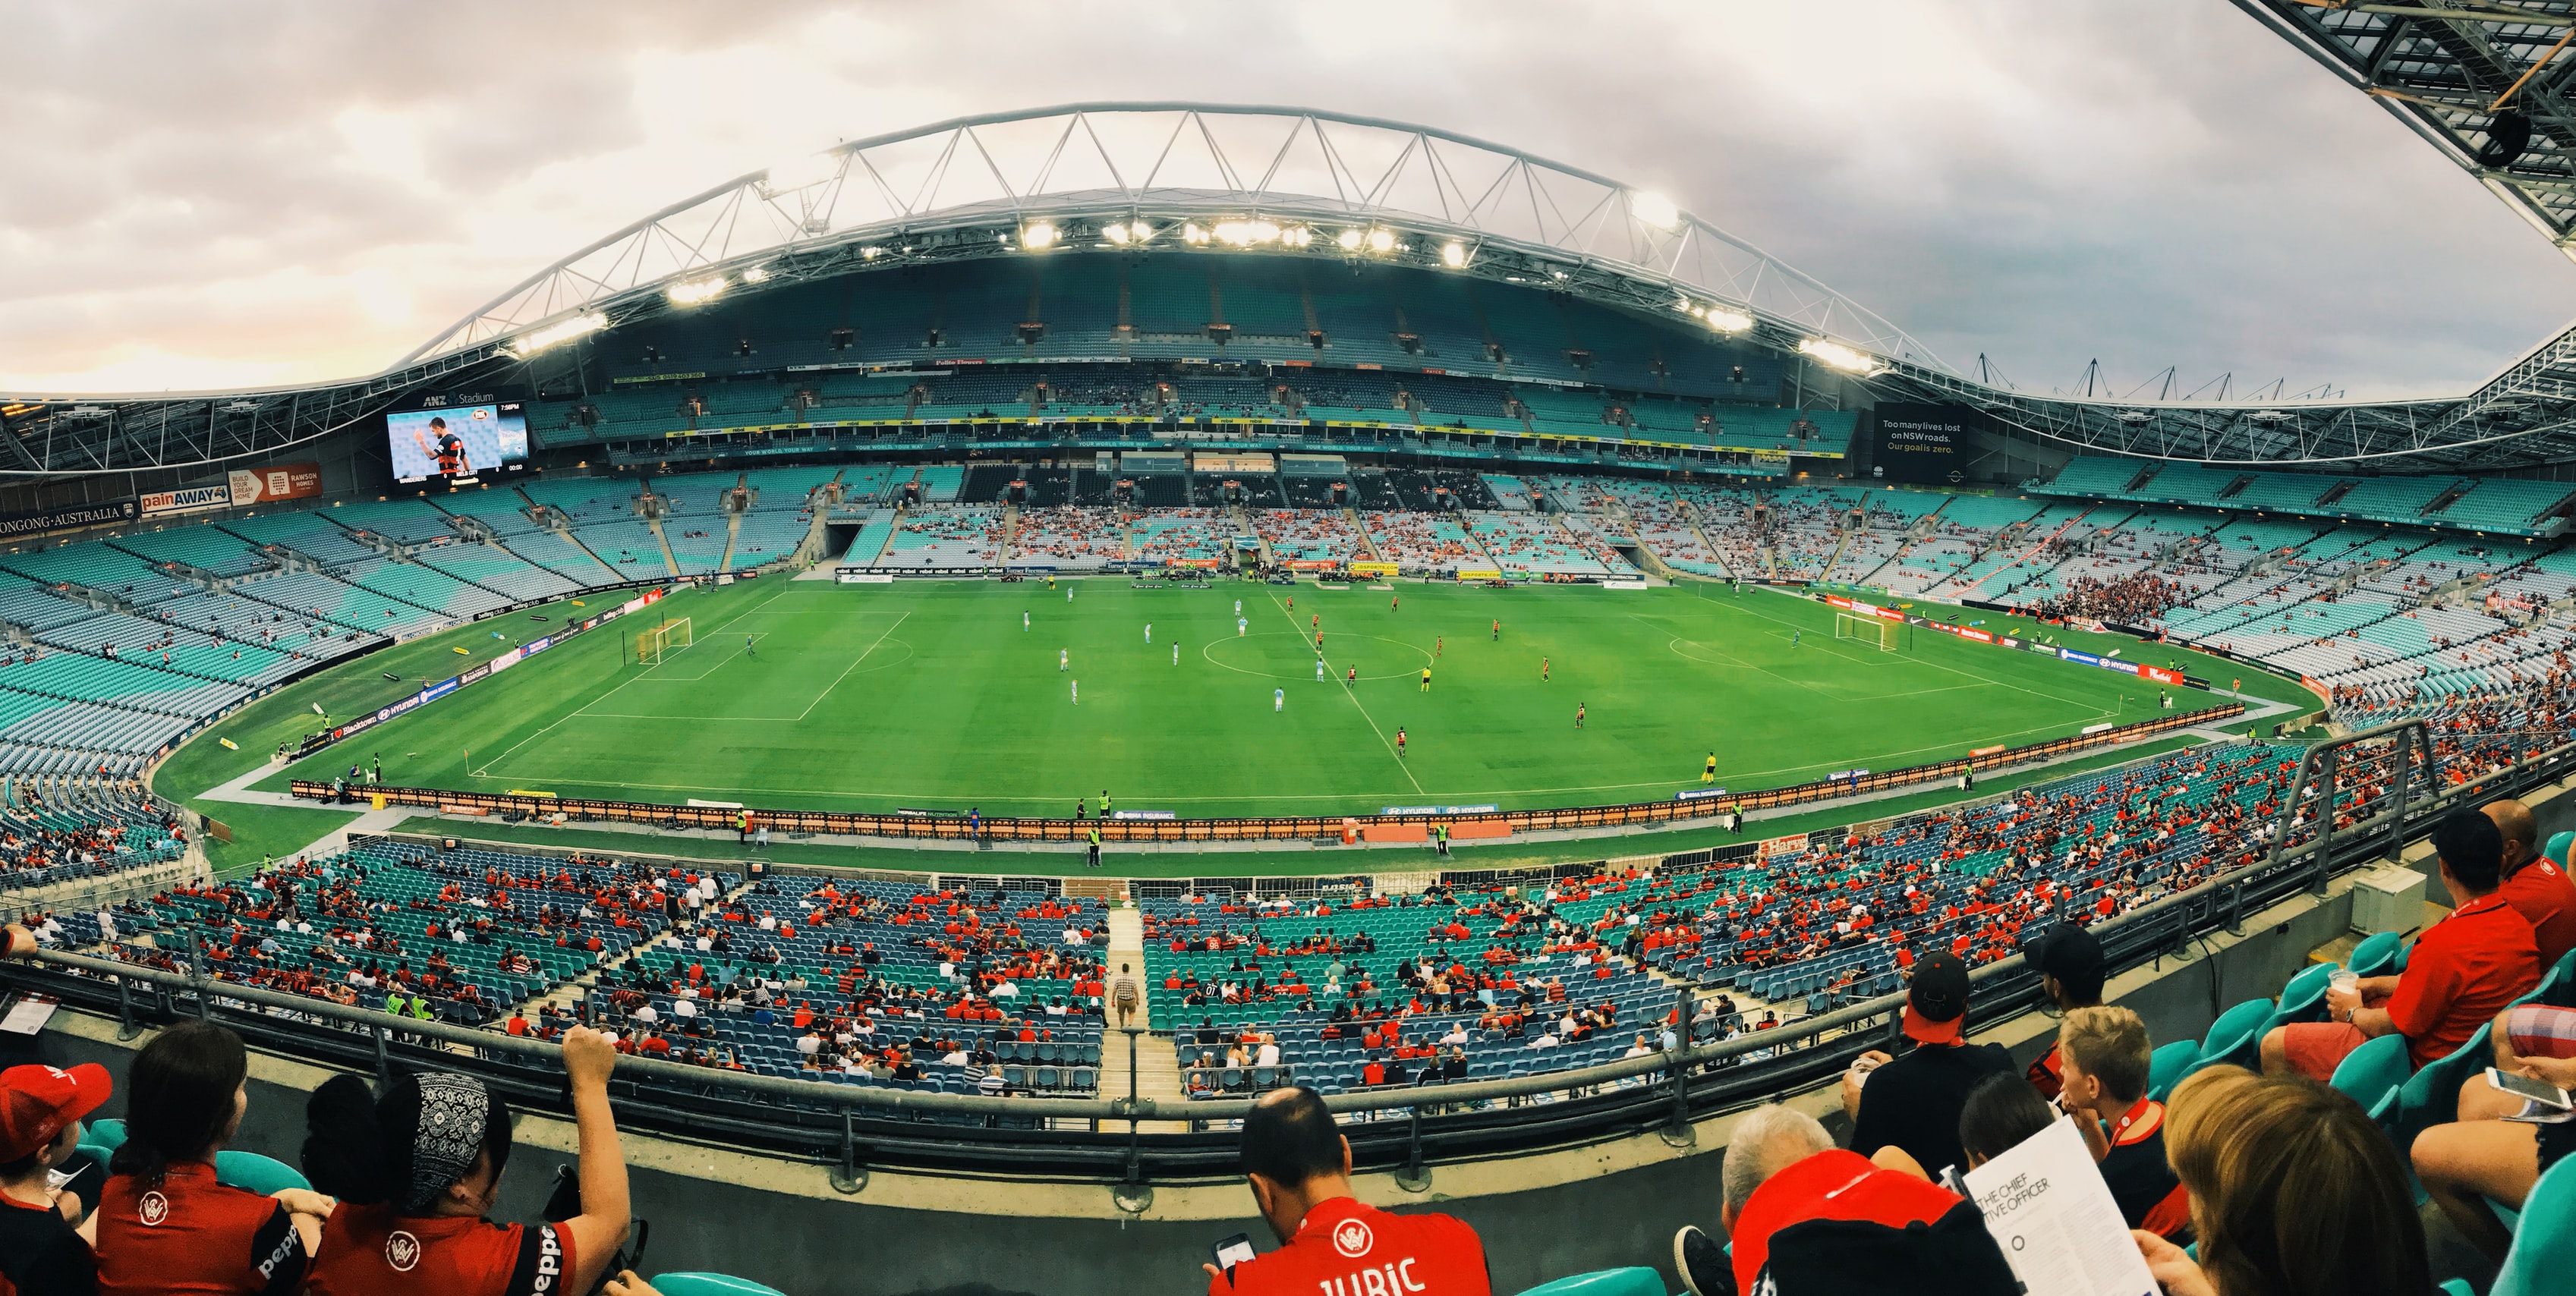 Stadium in Sydney, Australia